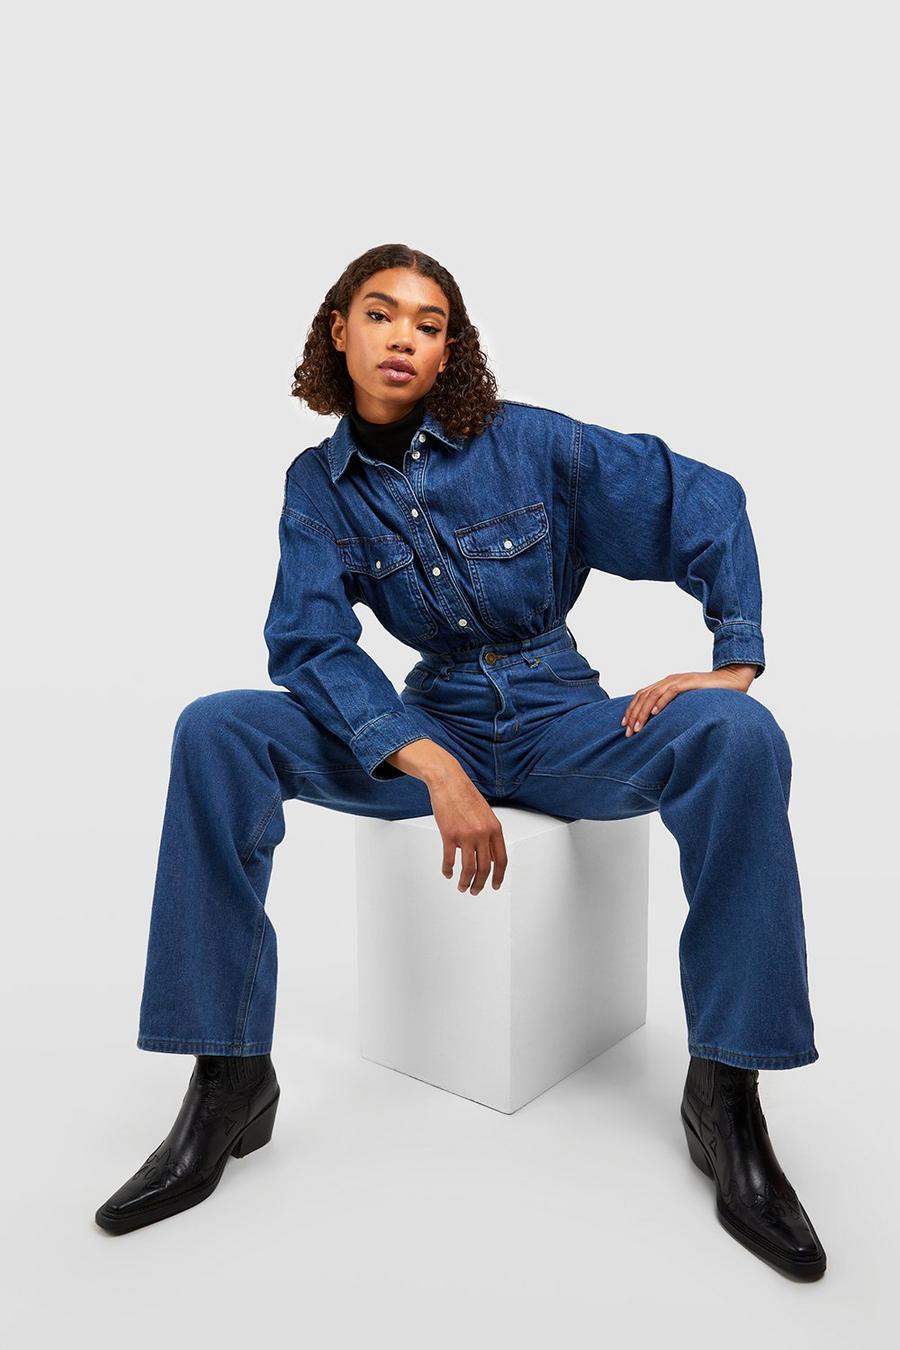 כחול ביניים ג'ינס high rise בגזרת בויפרנד לנשים גבוהות